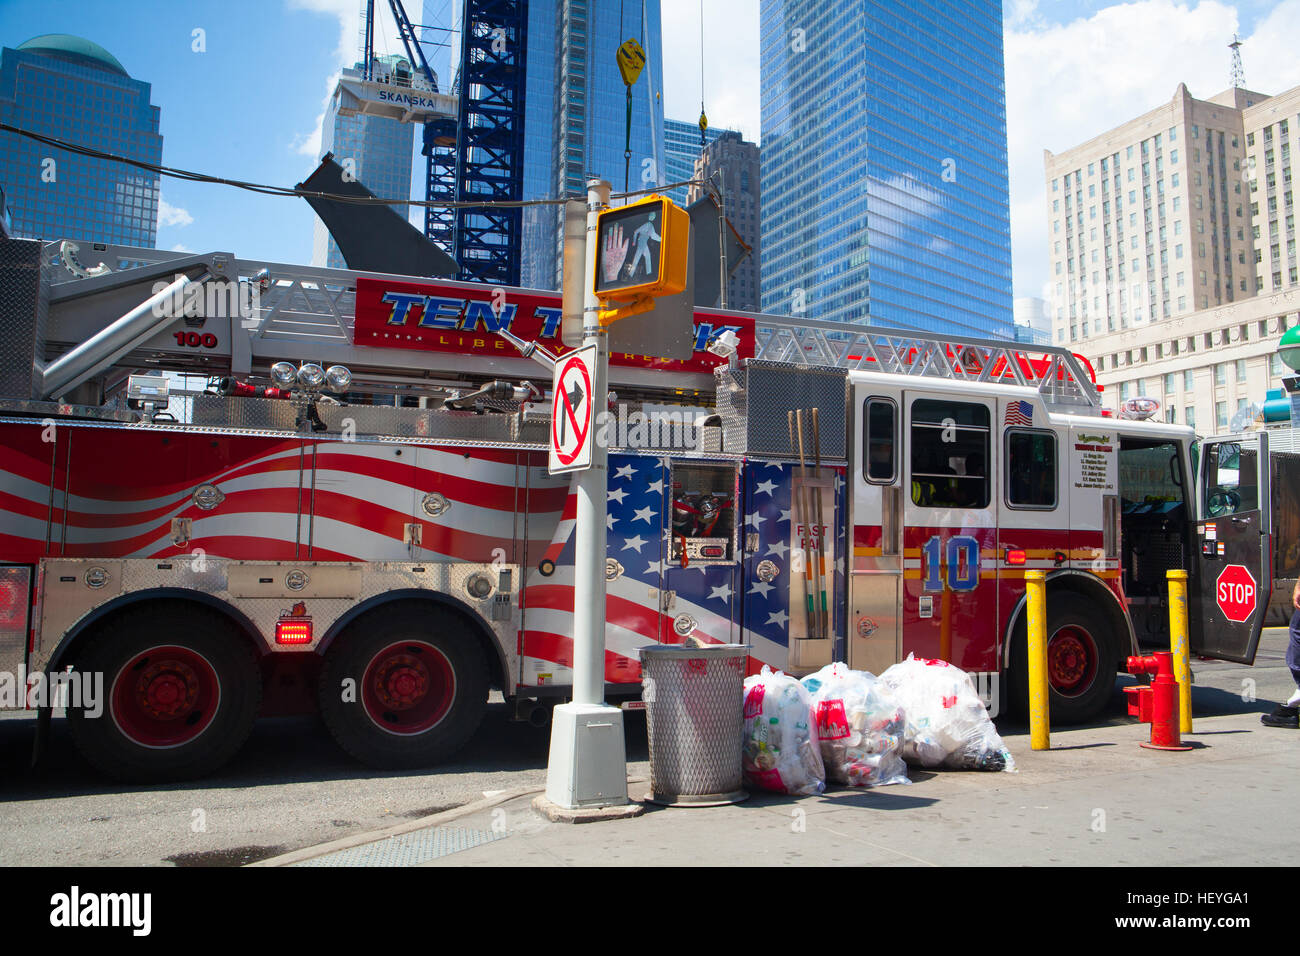 New York, USA - Le 29 juillet 2013:camion américain typique dans Manhattan, près du Ground Zero, New York City, USA Banque D'Images